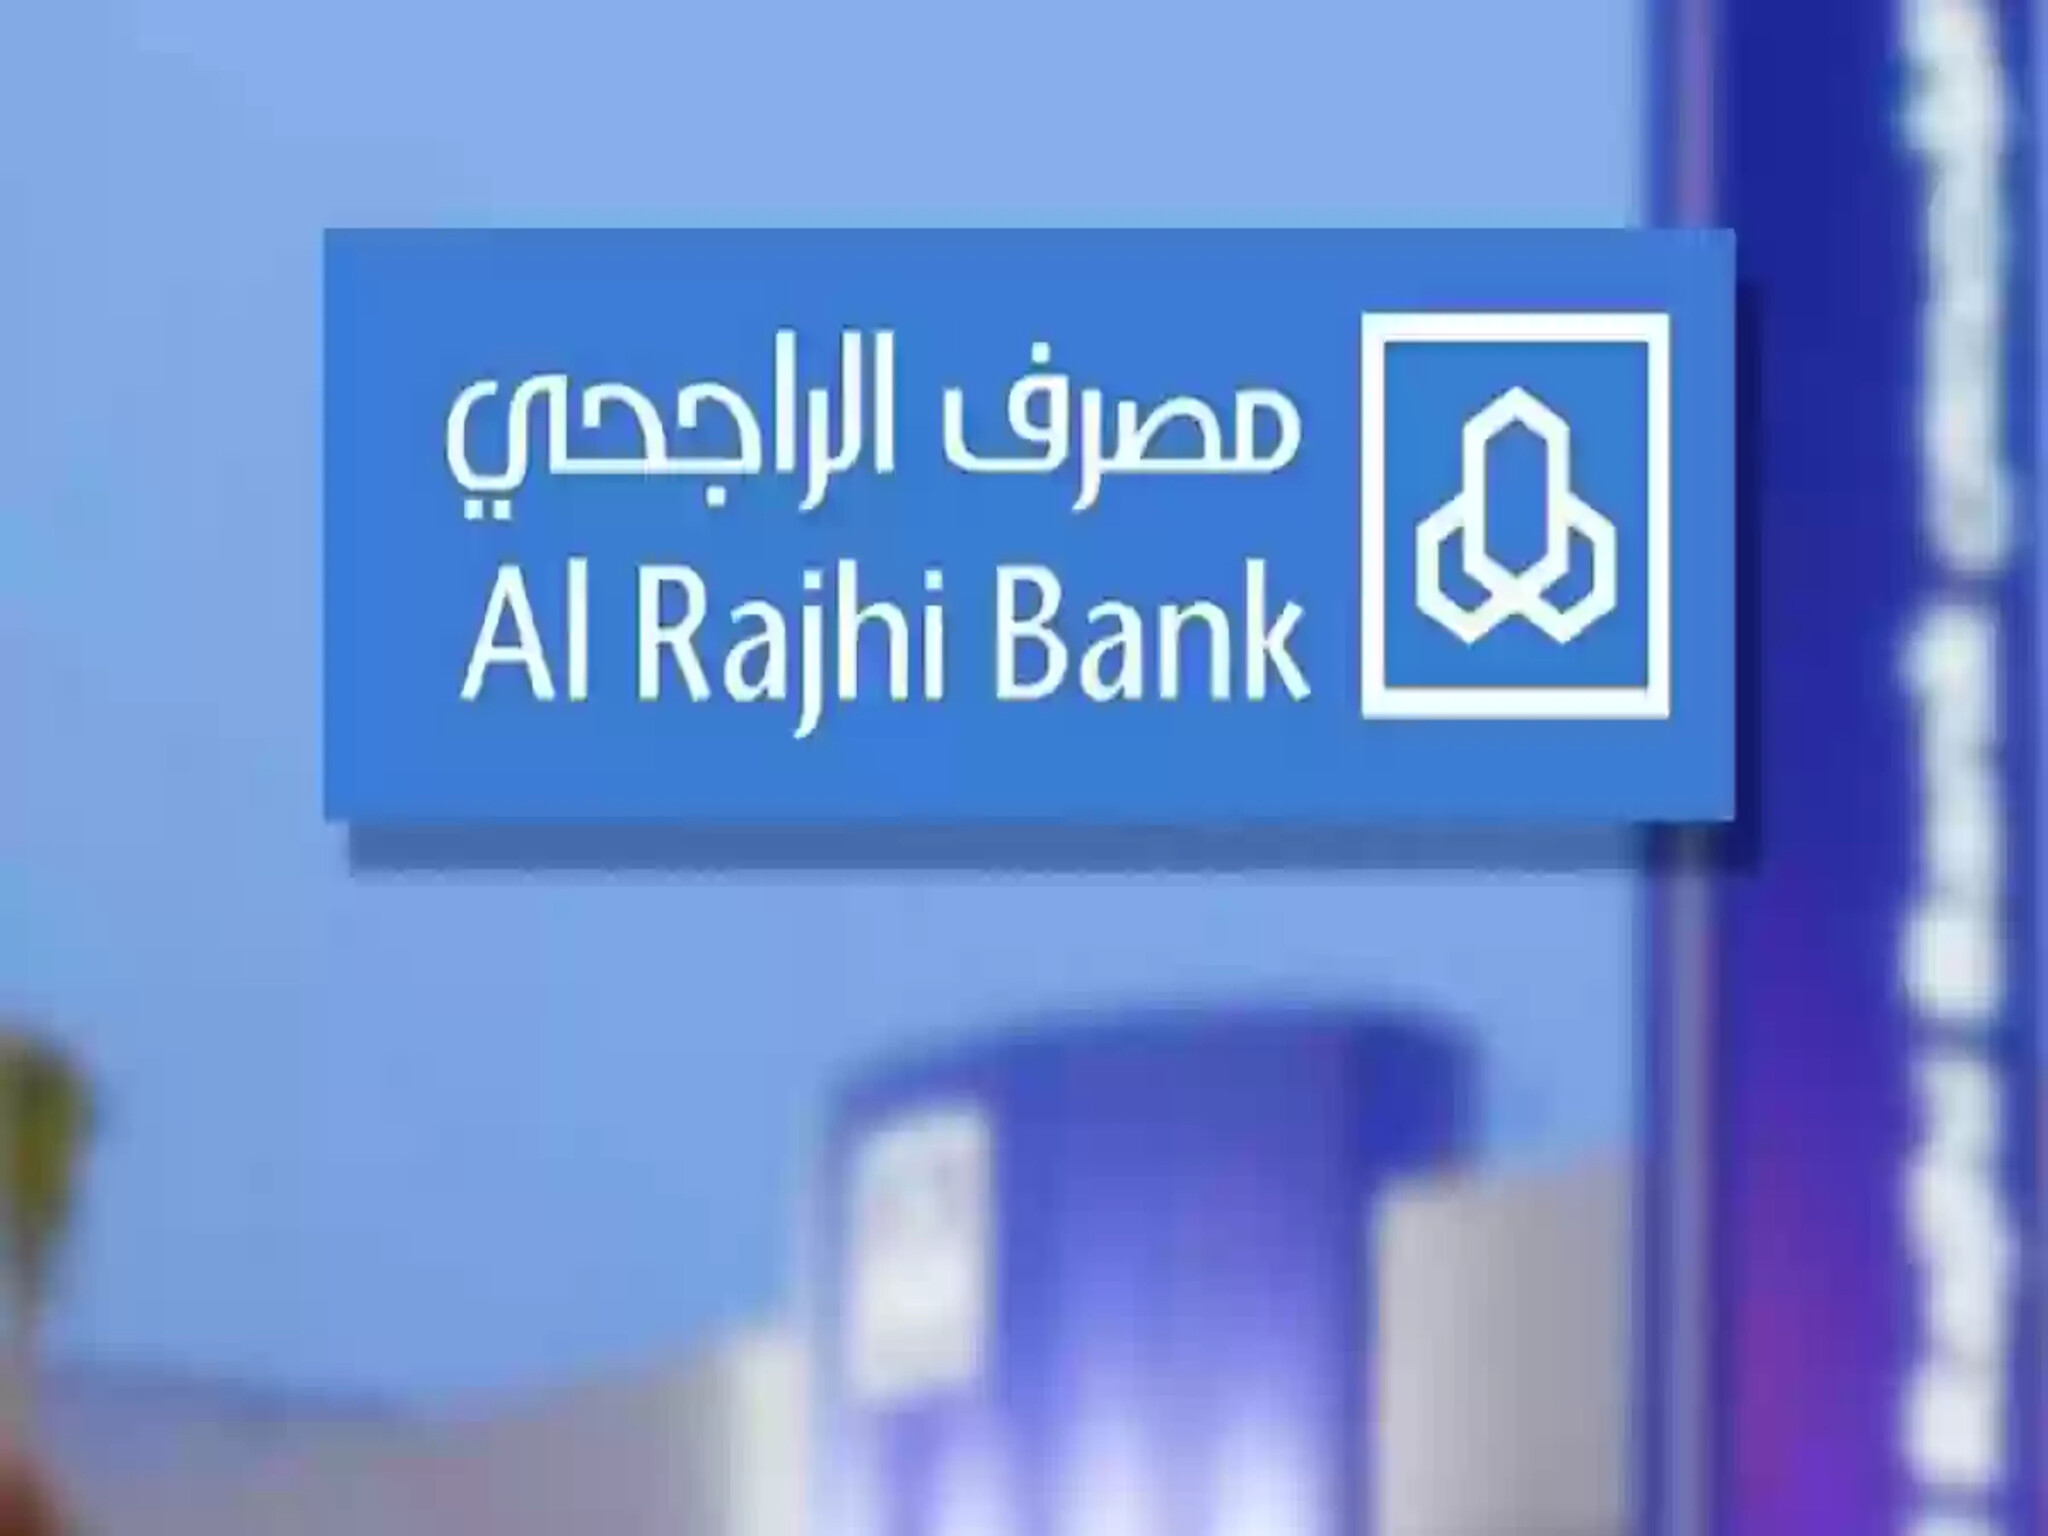 تعرف على شروط بنك الراجحي لفتح حسابات جديدة للمواطنين السعوديين والمقيمين 1446هـ